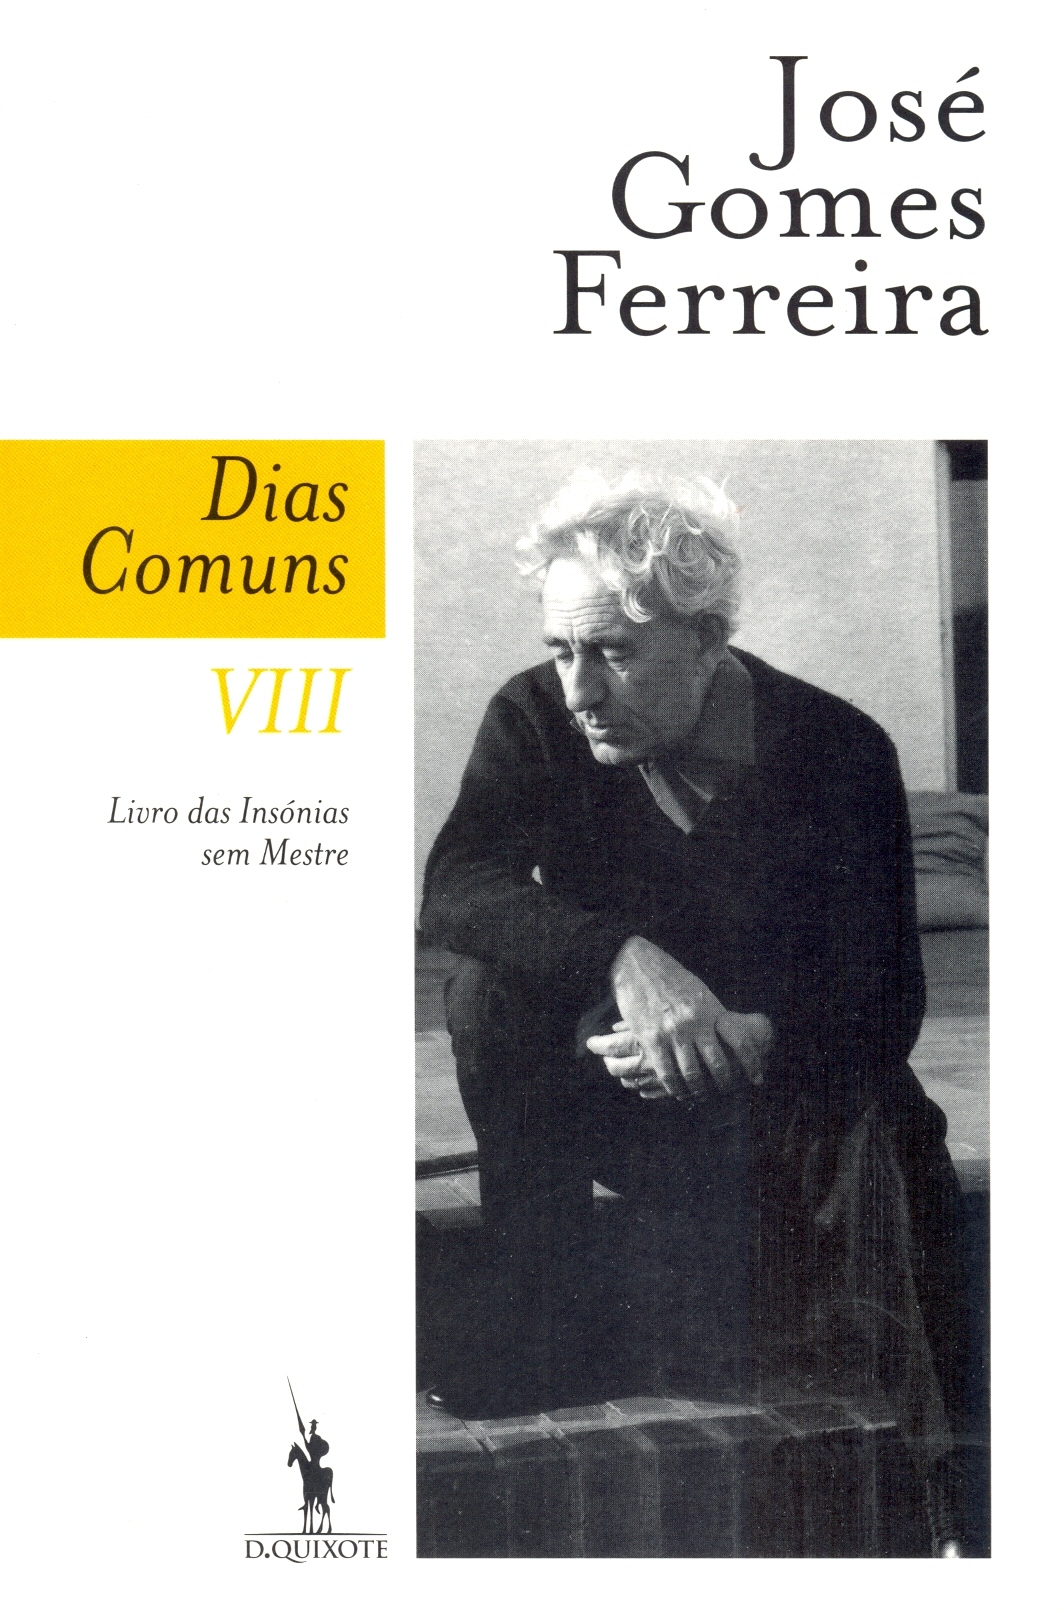 José Gomes Ferreira - Dias Comuns, VIII, Livro das Insónias sem Mestre